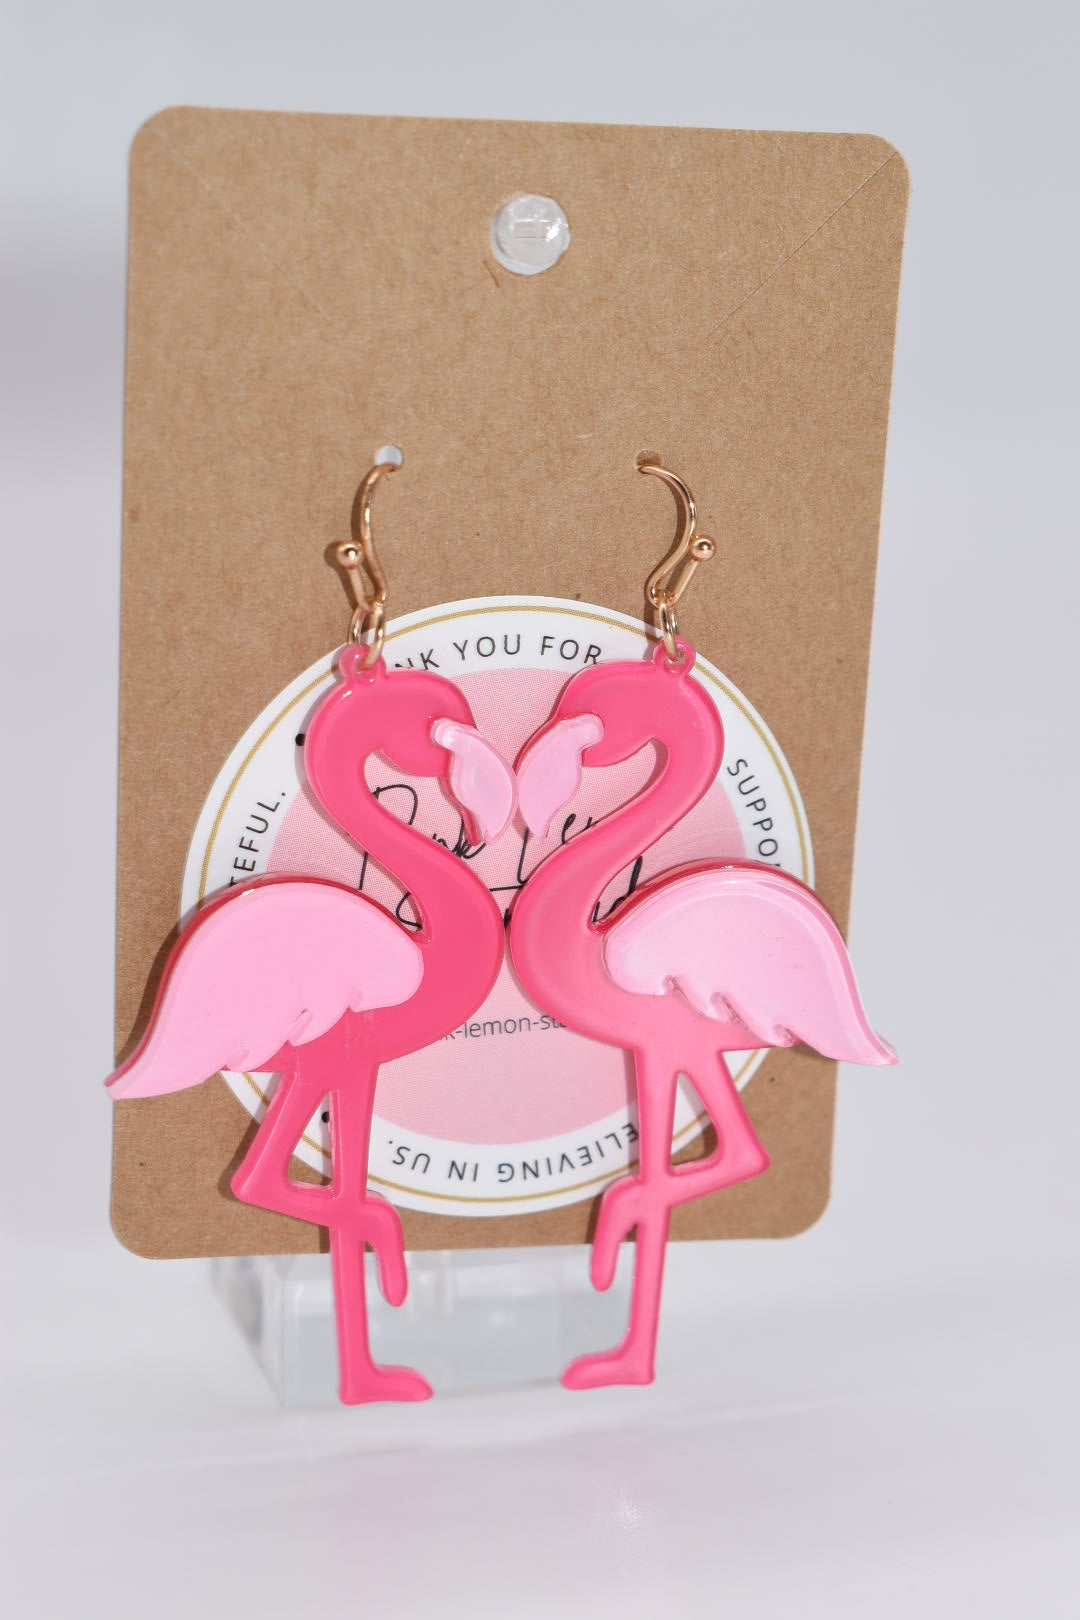 Statement Earrings: Flamingo Drop Earrings